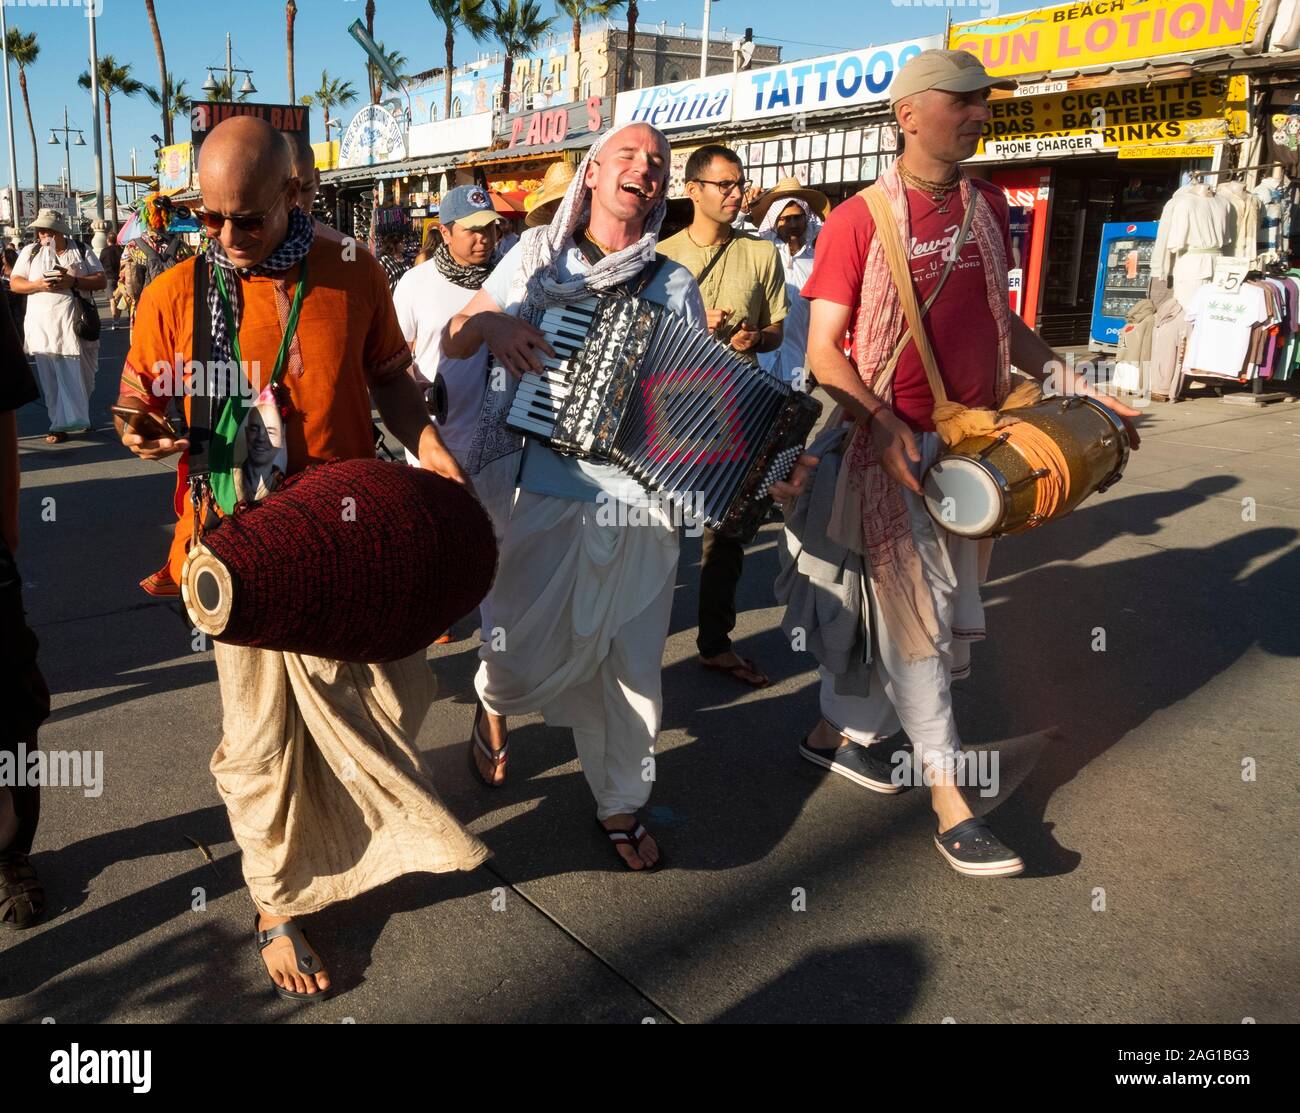 Hare Krishna band, Venice Beach, Los Angeles, California, USA Stock Photo